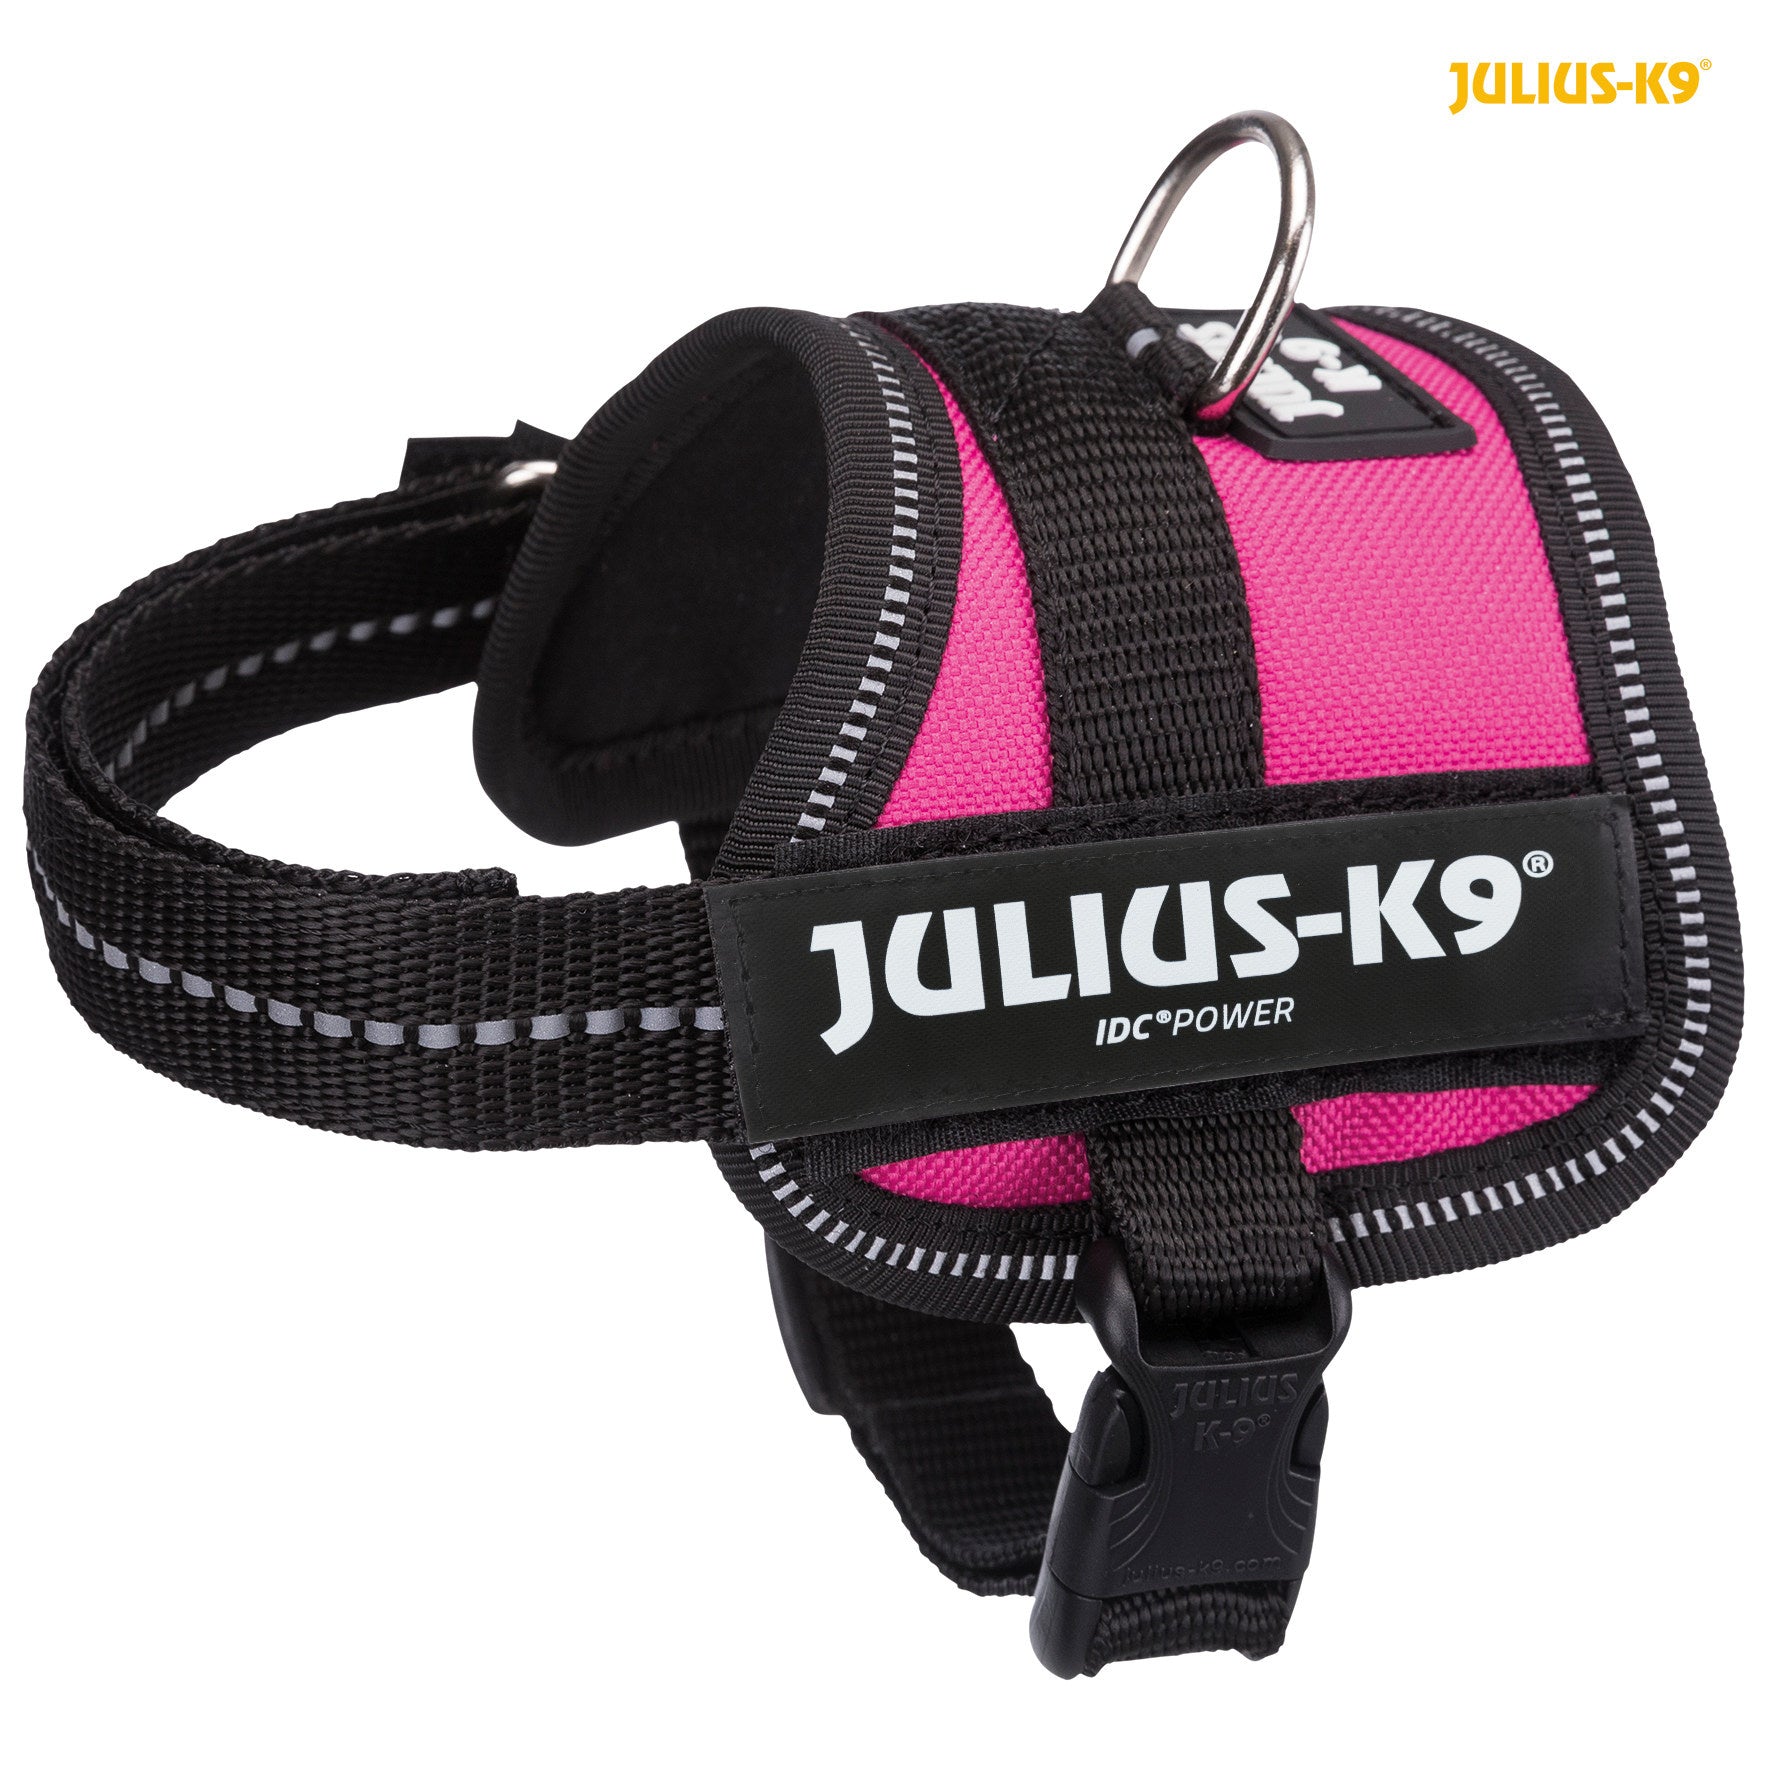 Harnais JULIUS-K9® Power, noir pour chien